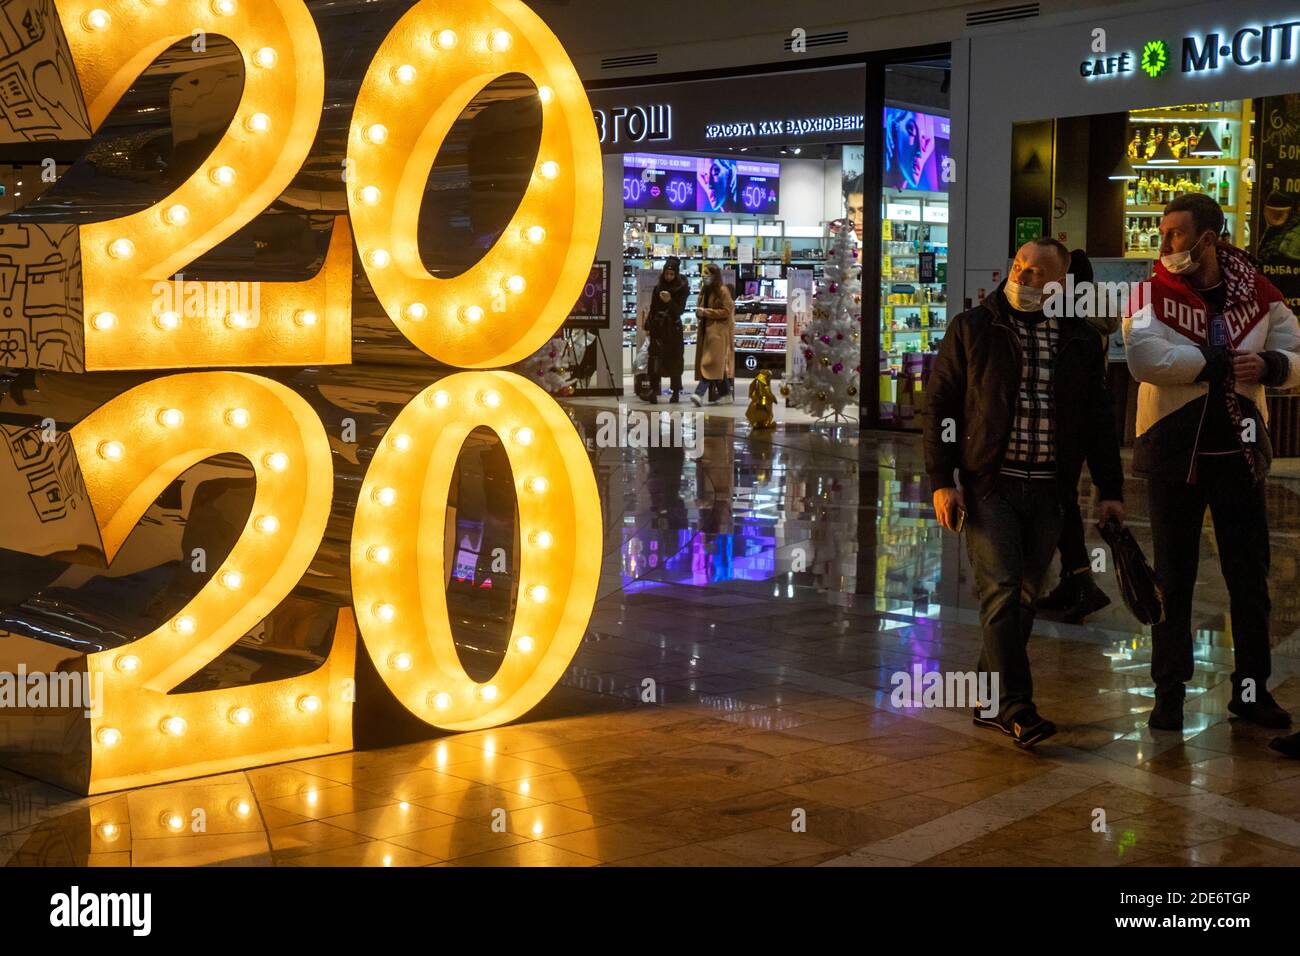 Moskau, Russland. 29. November 2020 im Zentrum des Einkaufszentrums AFIMALL City in Moskau, Russland, wird eine Installation in Form von Zahlen des Jahres '2020' installiert Stockfoto